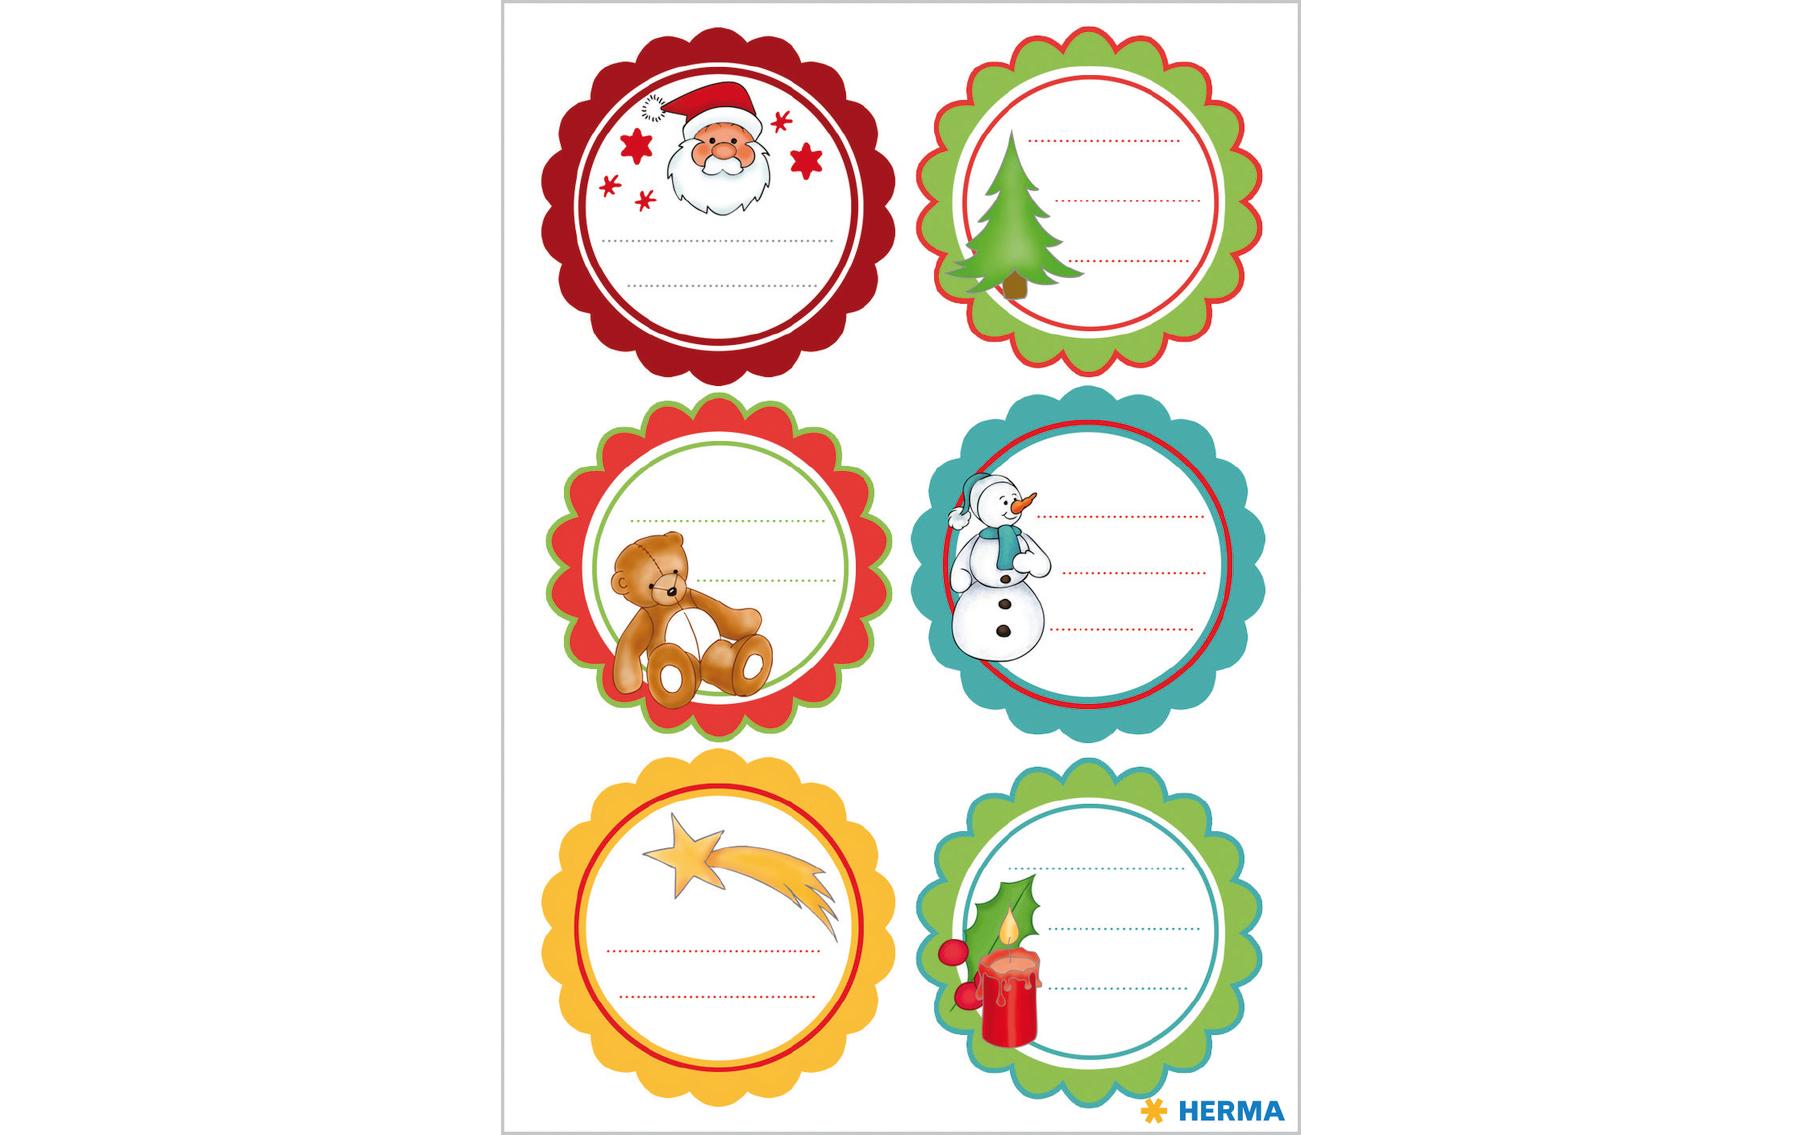 Herma Stickers Weihnachtssticker Weihnachtsgrüsse 2 Blatt à 12 Sticker